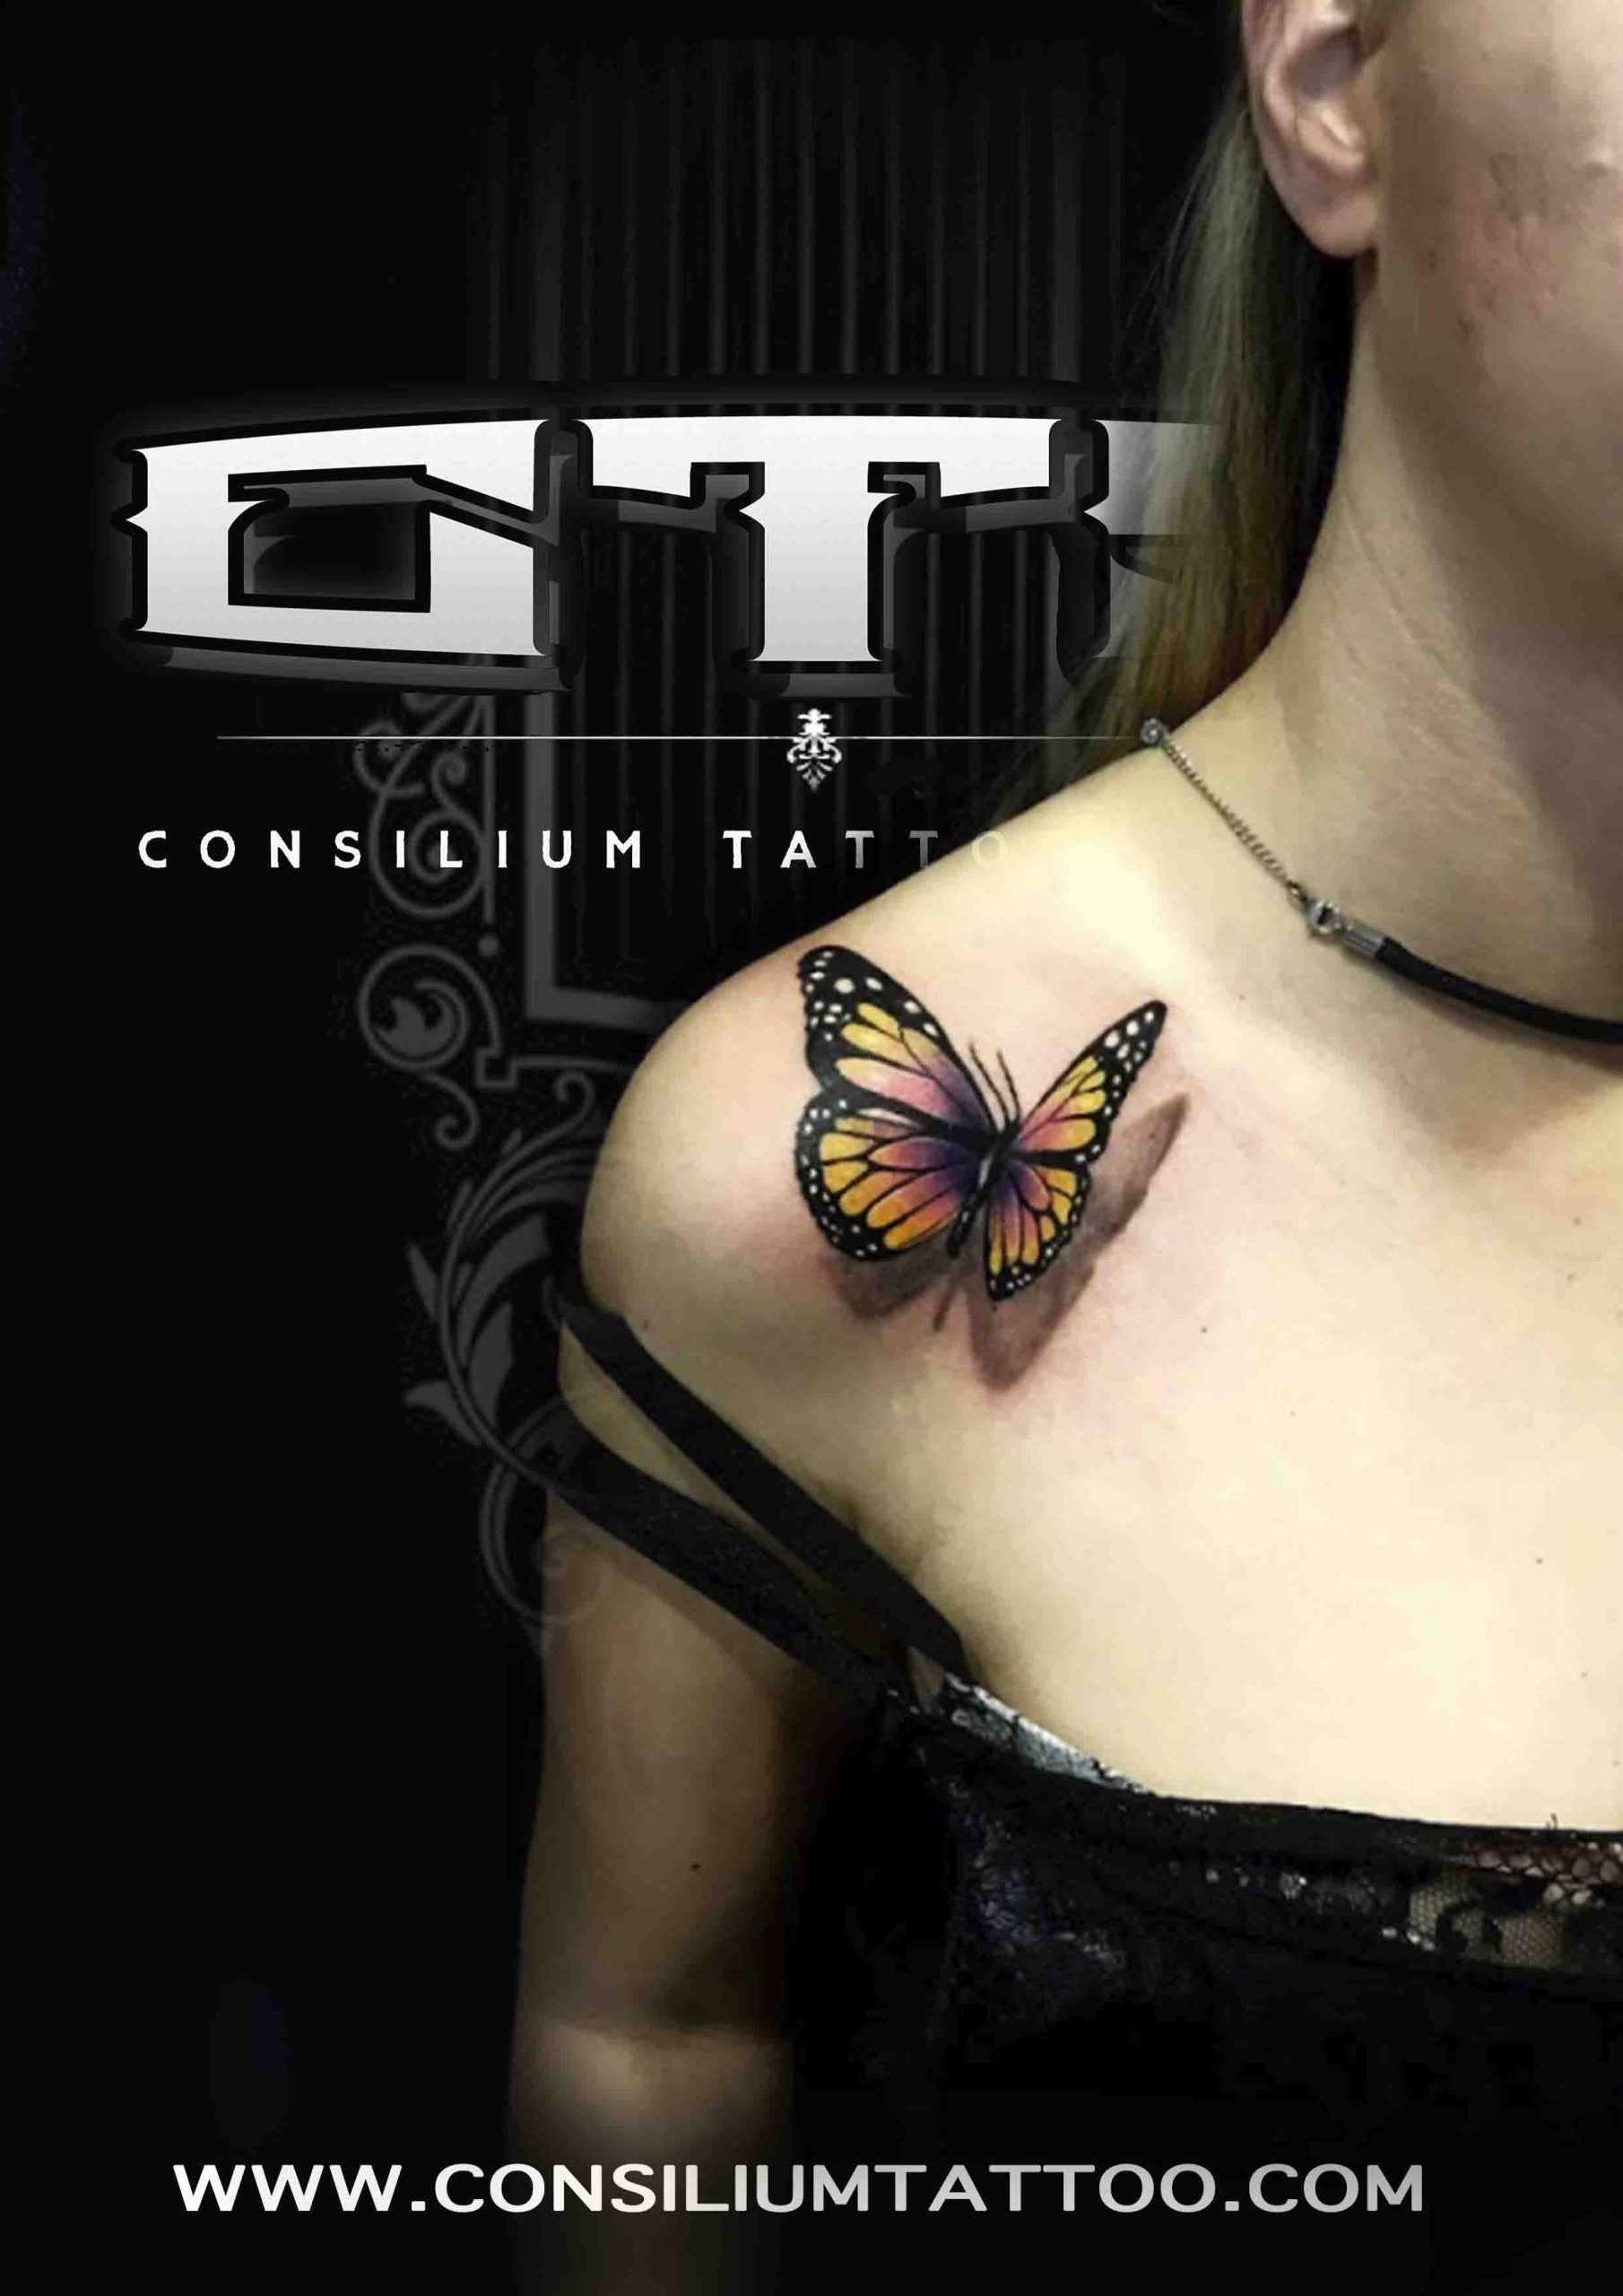 En resumen, el significado de un tatuaje de una mariposa tatuada puede variar según la persona, pero en general, representa la transformación, la libertad, la dualidad y la belleza efímera de la vida.